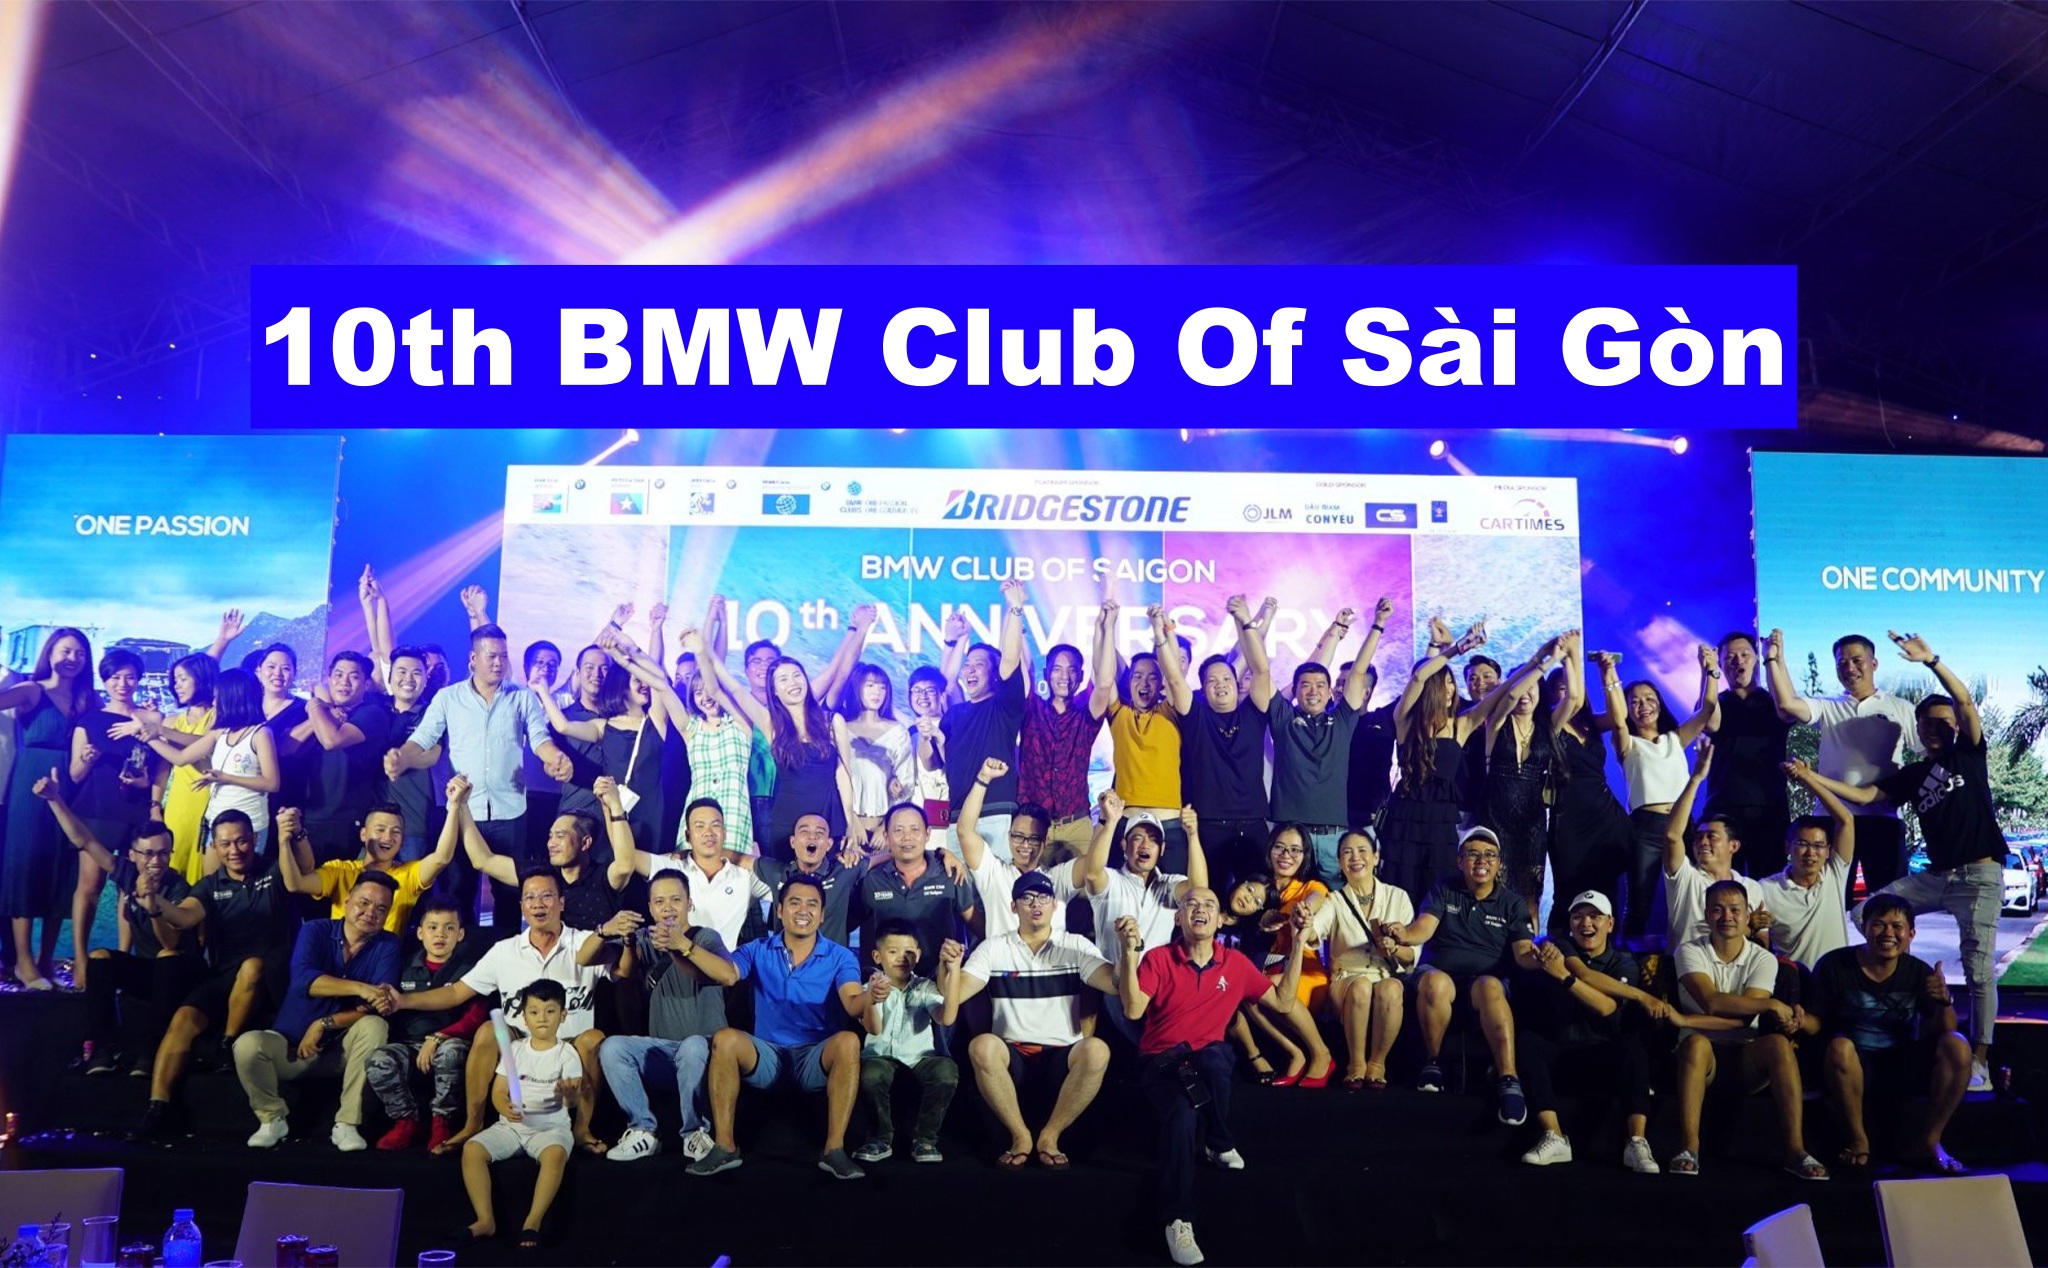 Tổng kết Offline sinh nhật BMW Sài Gòn, 10 năm 1 ngọn lửa đam mê